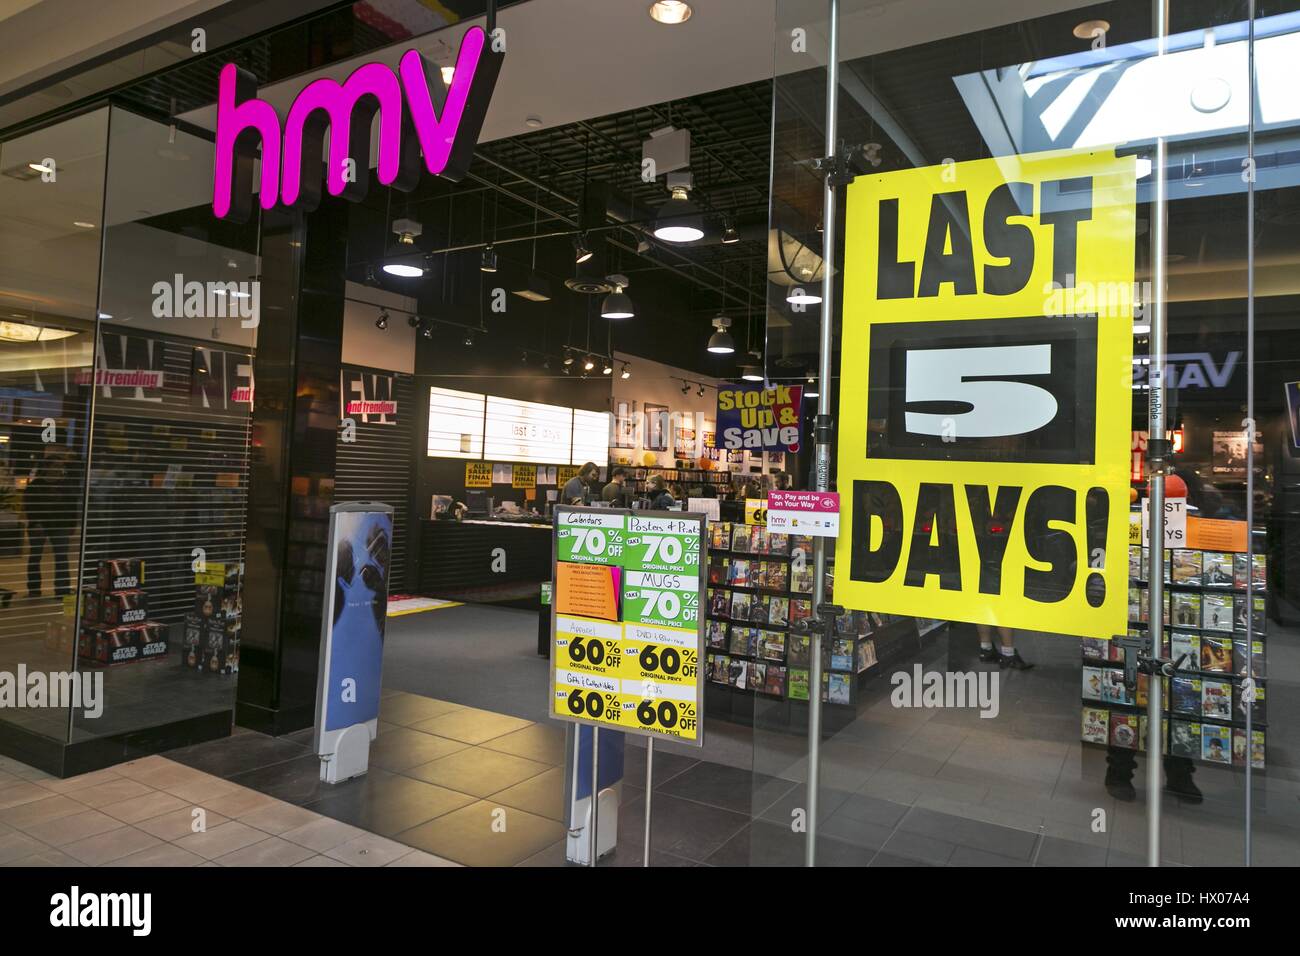 HMV Canada Calgary Alberta Market Mall fermeture du magasin de musique audio Nationwide. Publicité des cinq derniers jours sur la vue latérale de la fenêtre en verre ouverte Banque D'Images